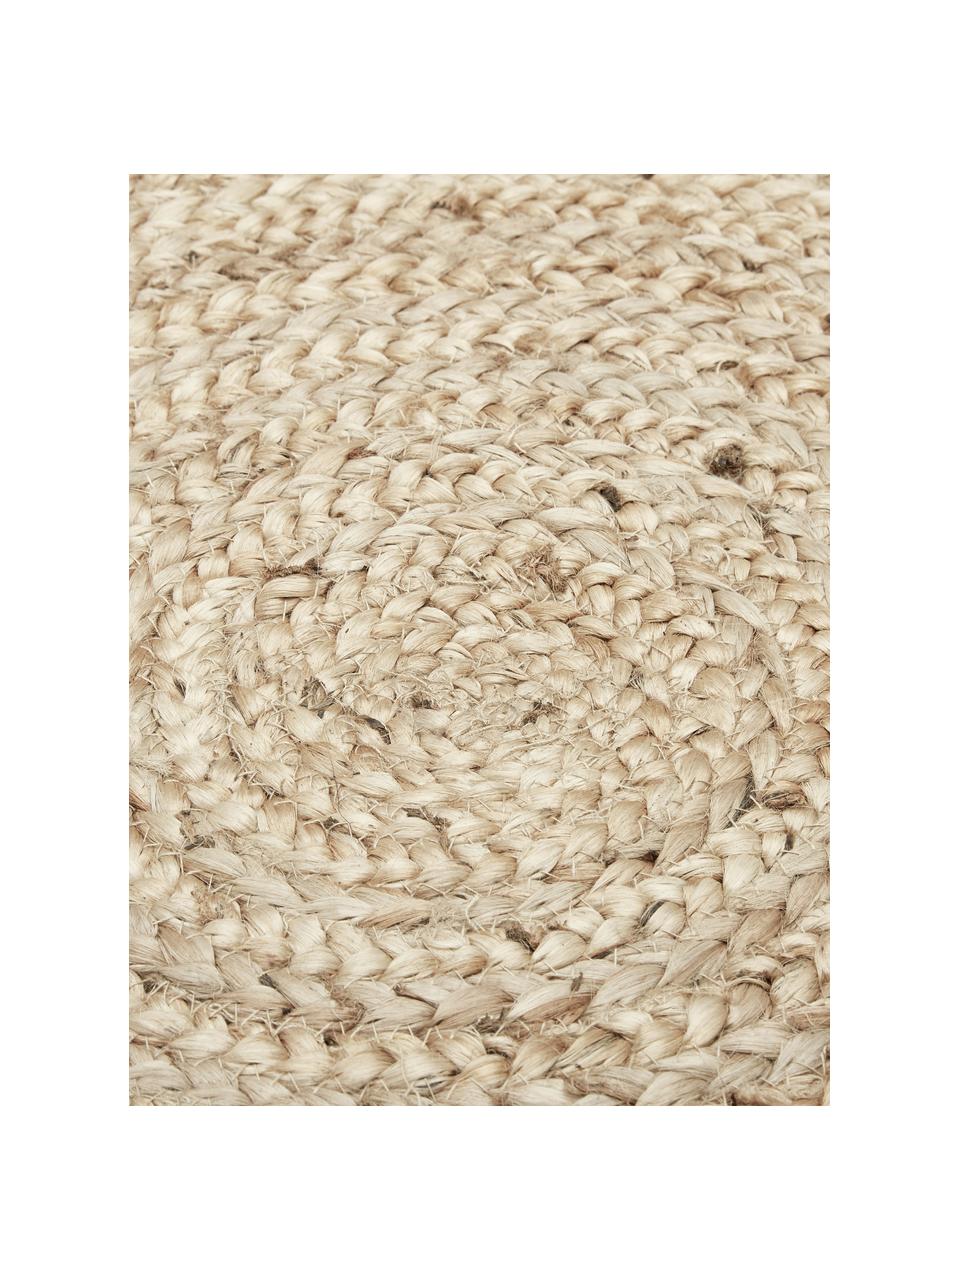 Okrągły ręcznie tkany dywan z juty Sharmila, 100% juta

Ponieważ dywany z juty są szorstkie, są mniej odpowiednie do bezpośredniego kontaktu ze skórą, Beżowy, Ø 120 cm (Rozmiar S)